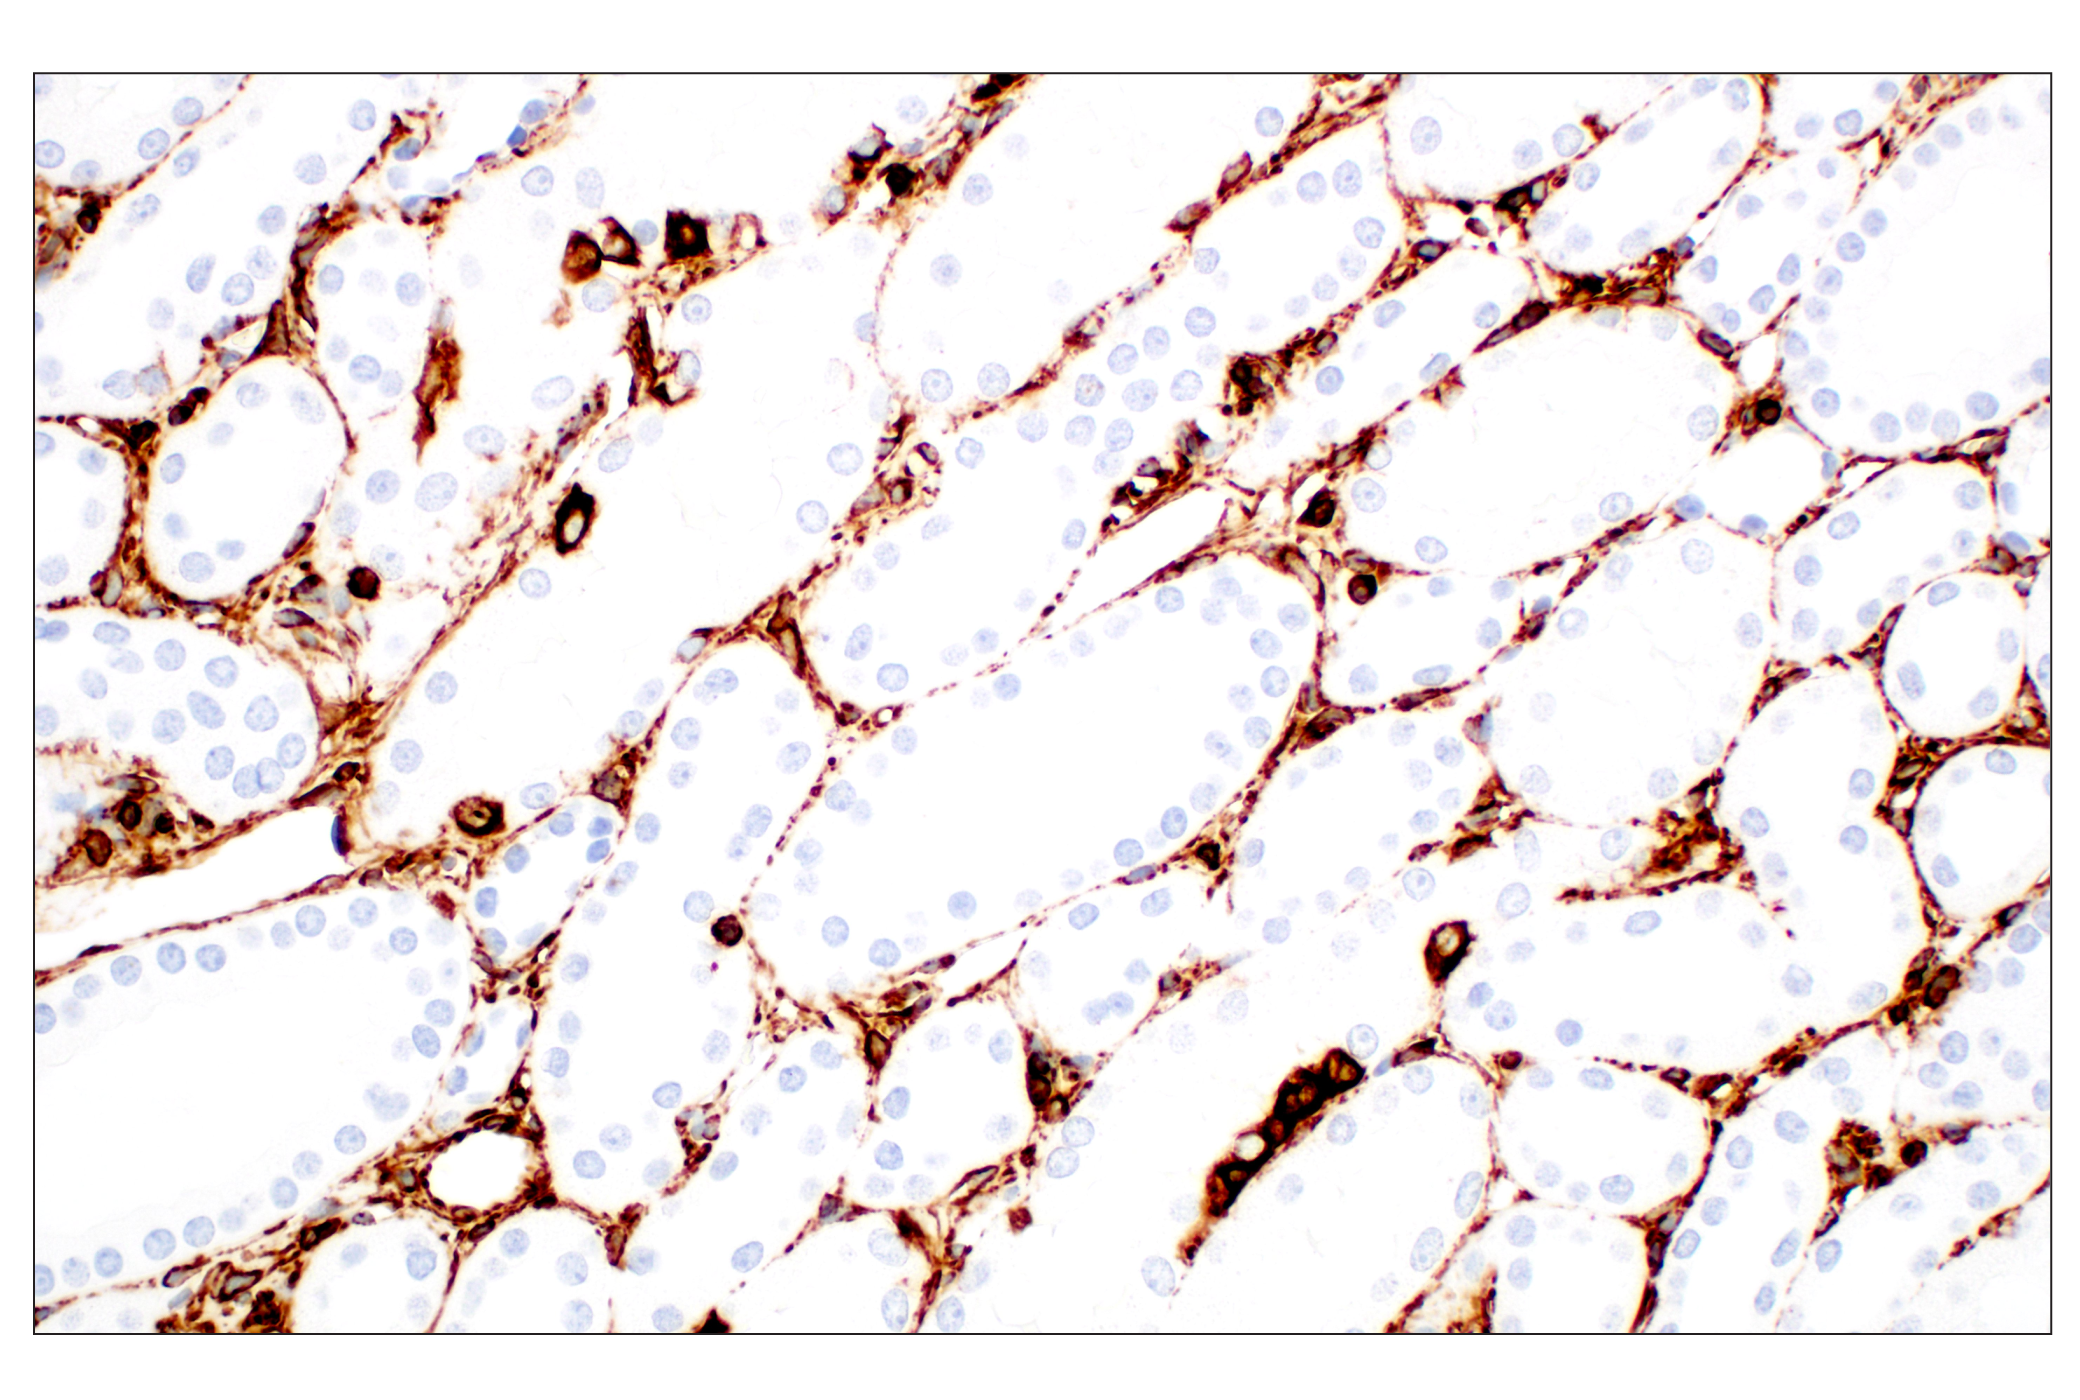  Image 41: Cell Fractionation Antibody Sampler Kit